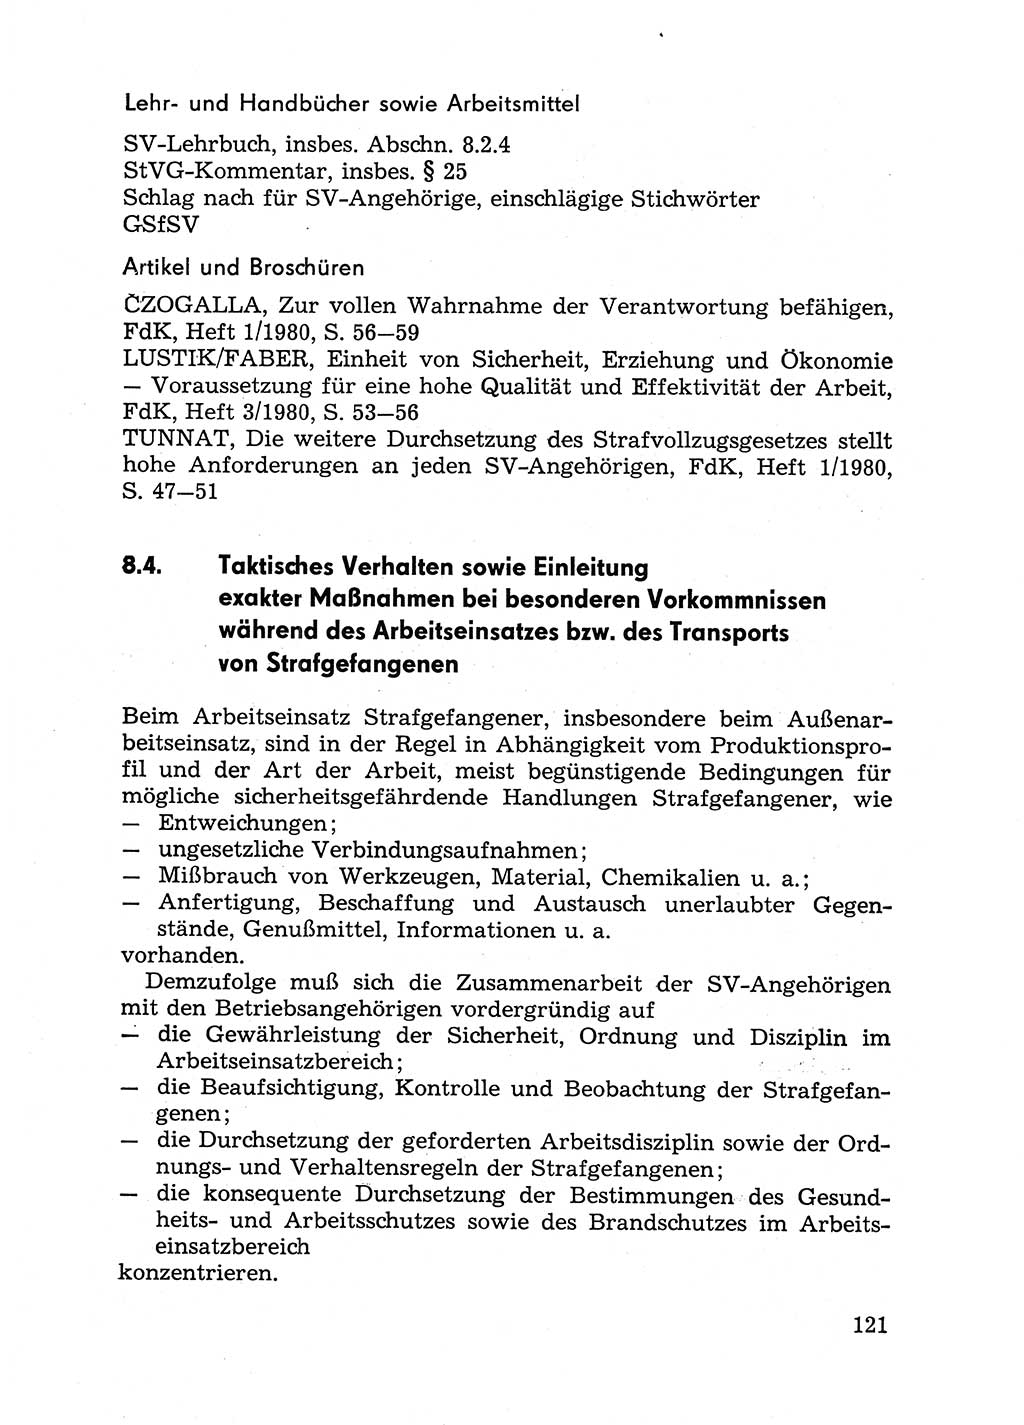 Handbuch für Betriebsangehörige, Abteilung Strafvollzug (SV) [Ministerium des Innern (MdI) Deutsche Demokratische Republik (DDR)] 1981, Seite 121 (Hb. BA Abt. SV MdI DDR 1981, S. 121)